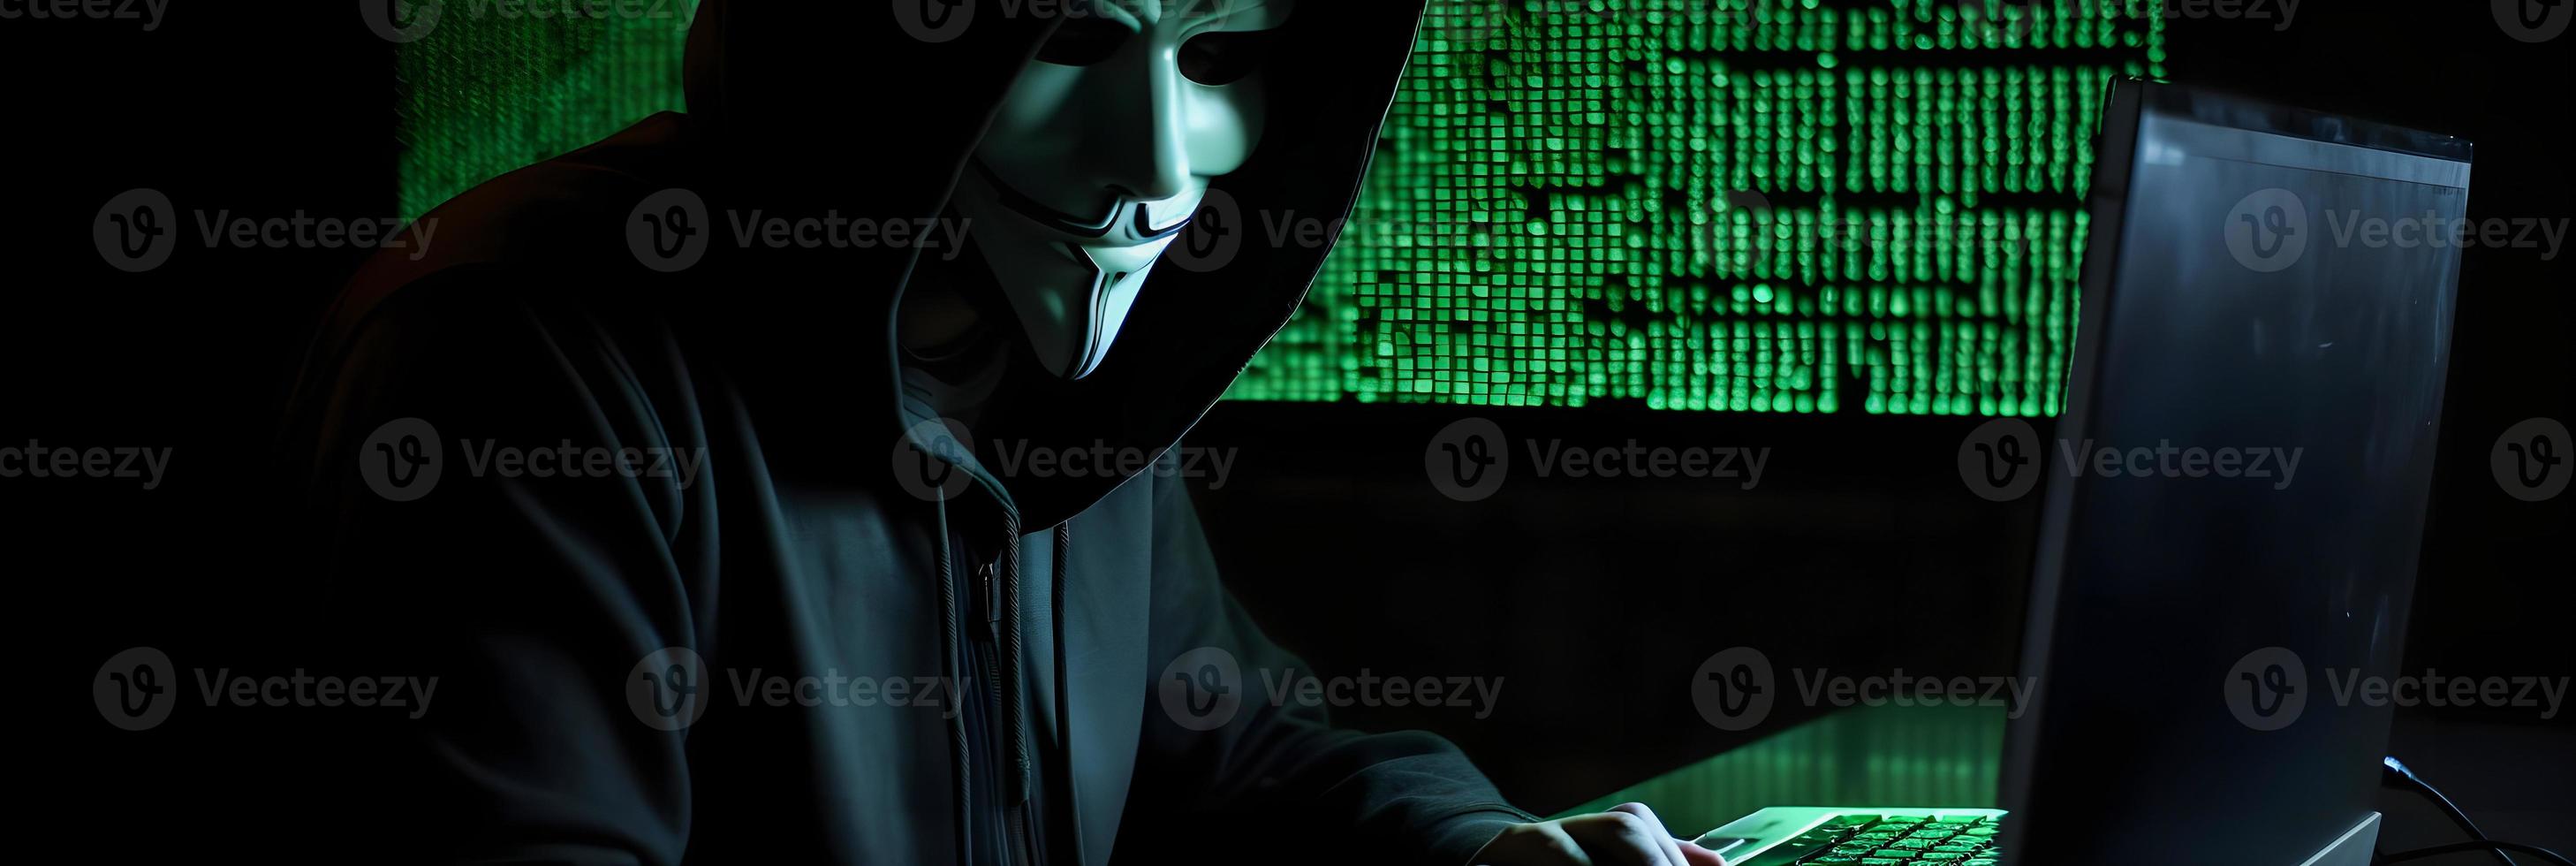 dévoilement le énigmatique monde de cybercriminalité. une blanc masqué pirate informatique de face vue au milieu de foncé capuche et vert matrice code Contexte photo